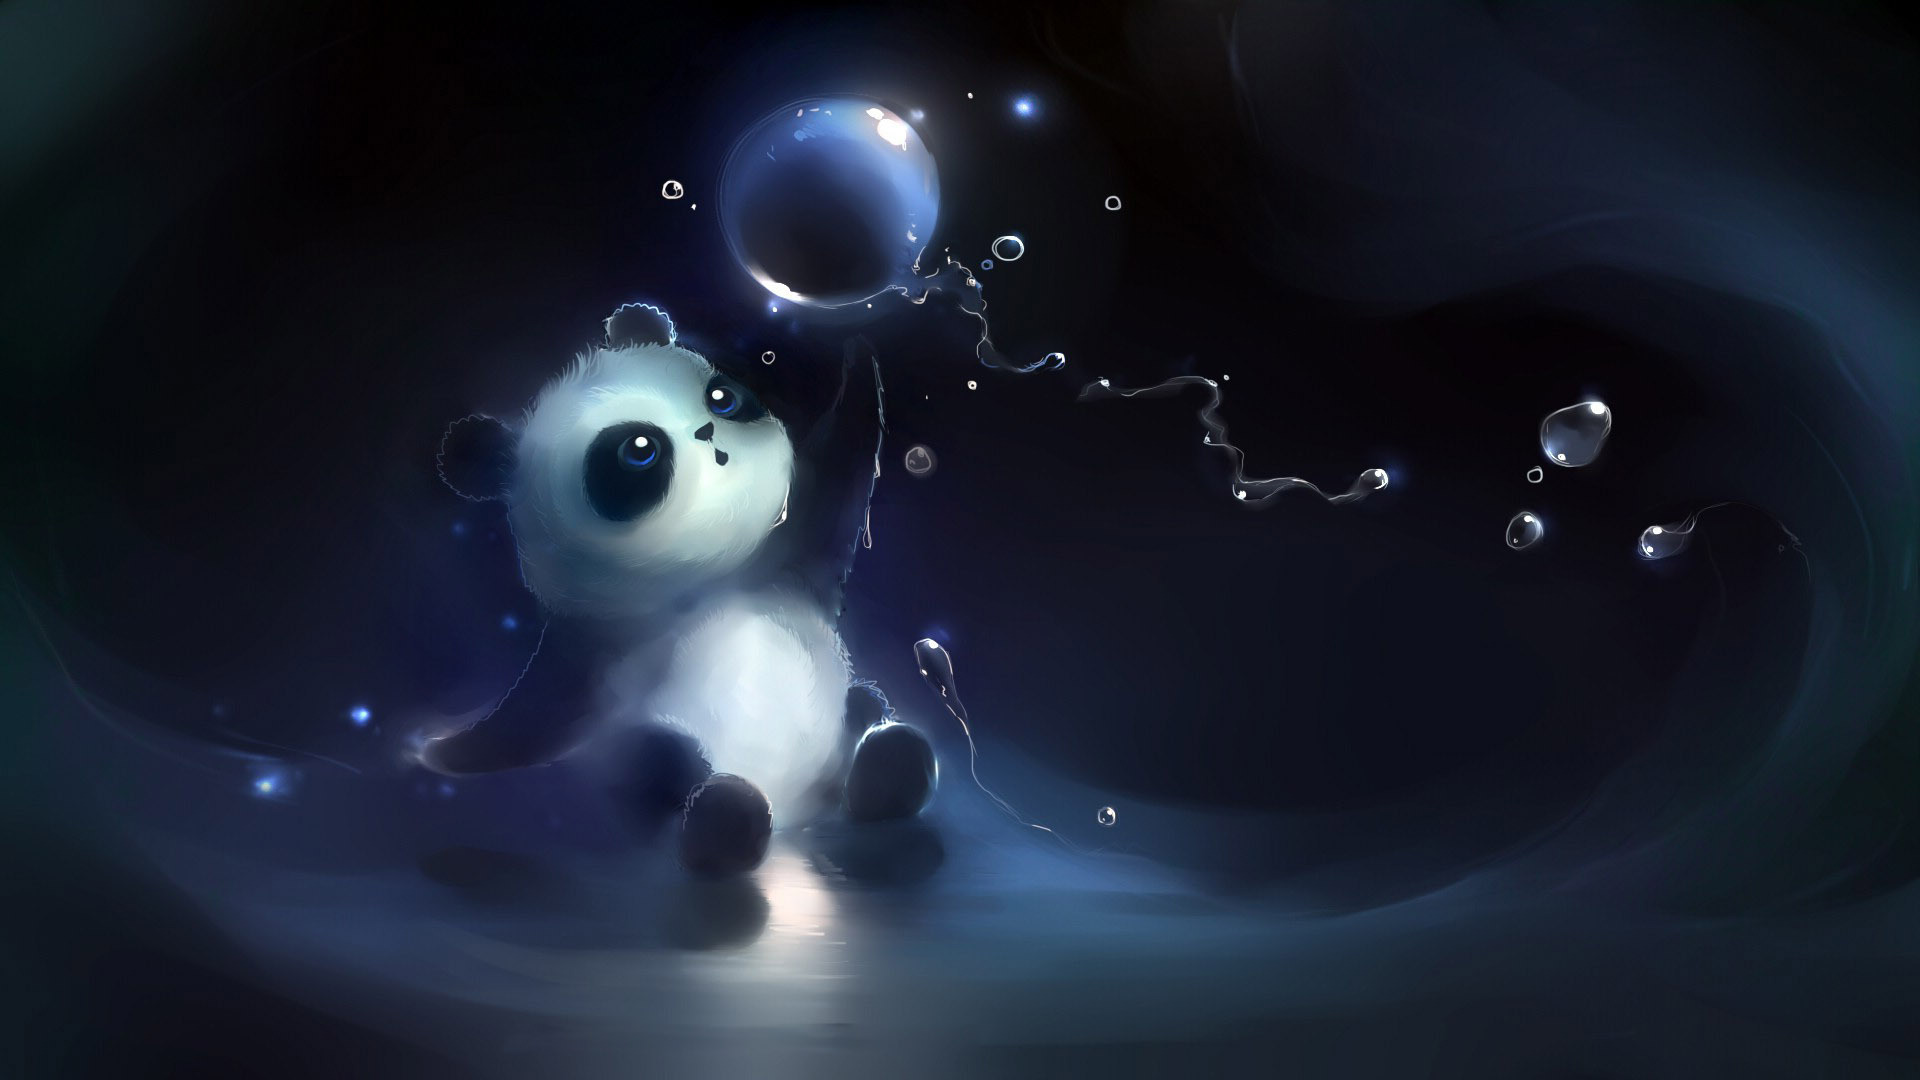 Cartoon Dowload Desktop Panda Bear Image Wallpaper